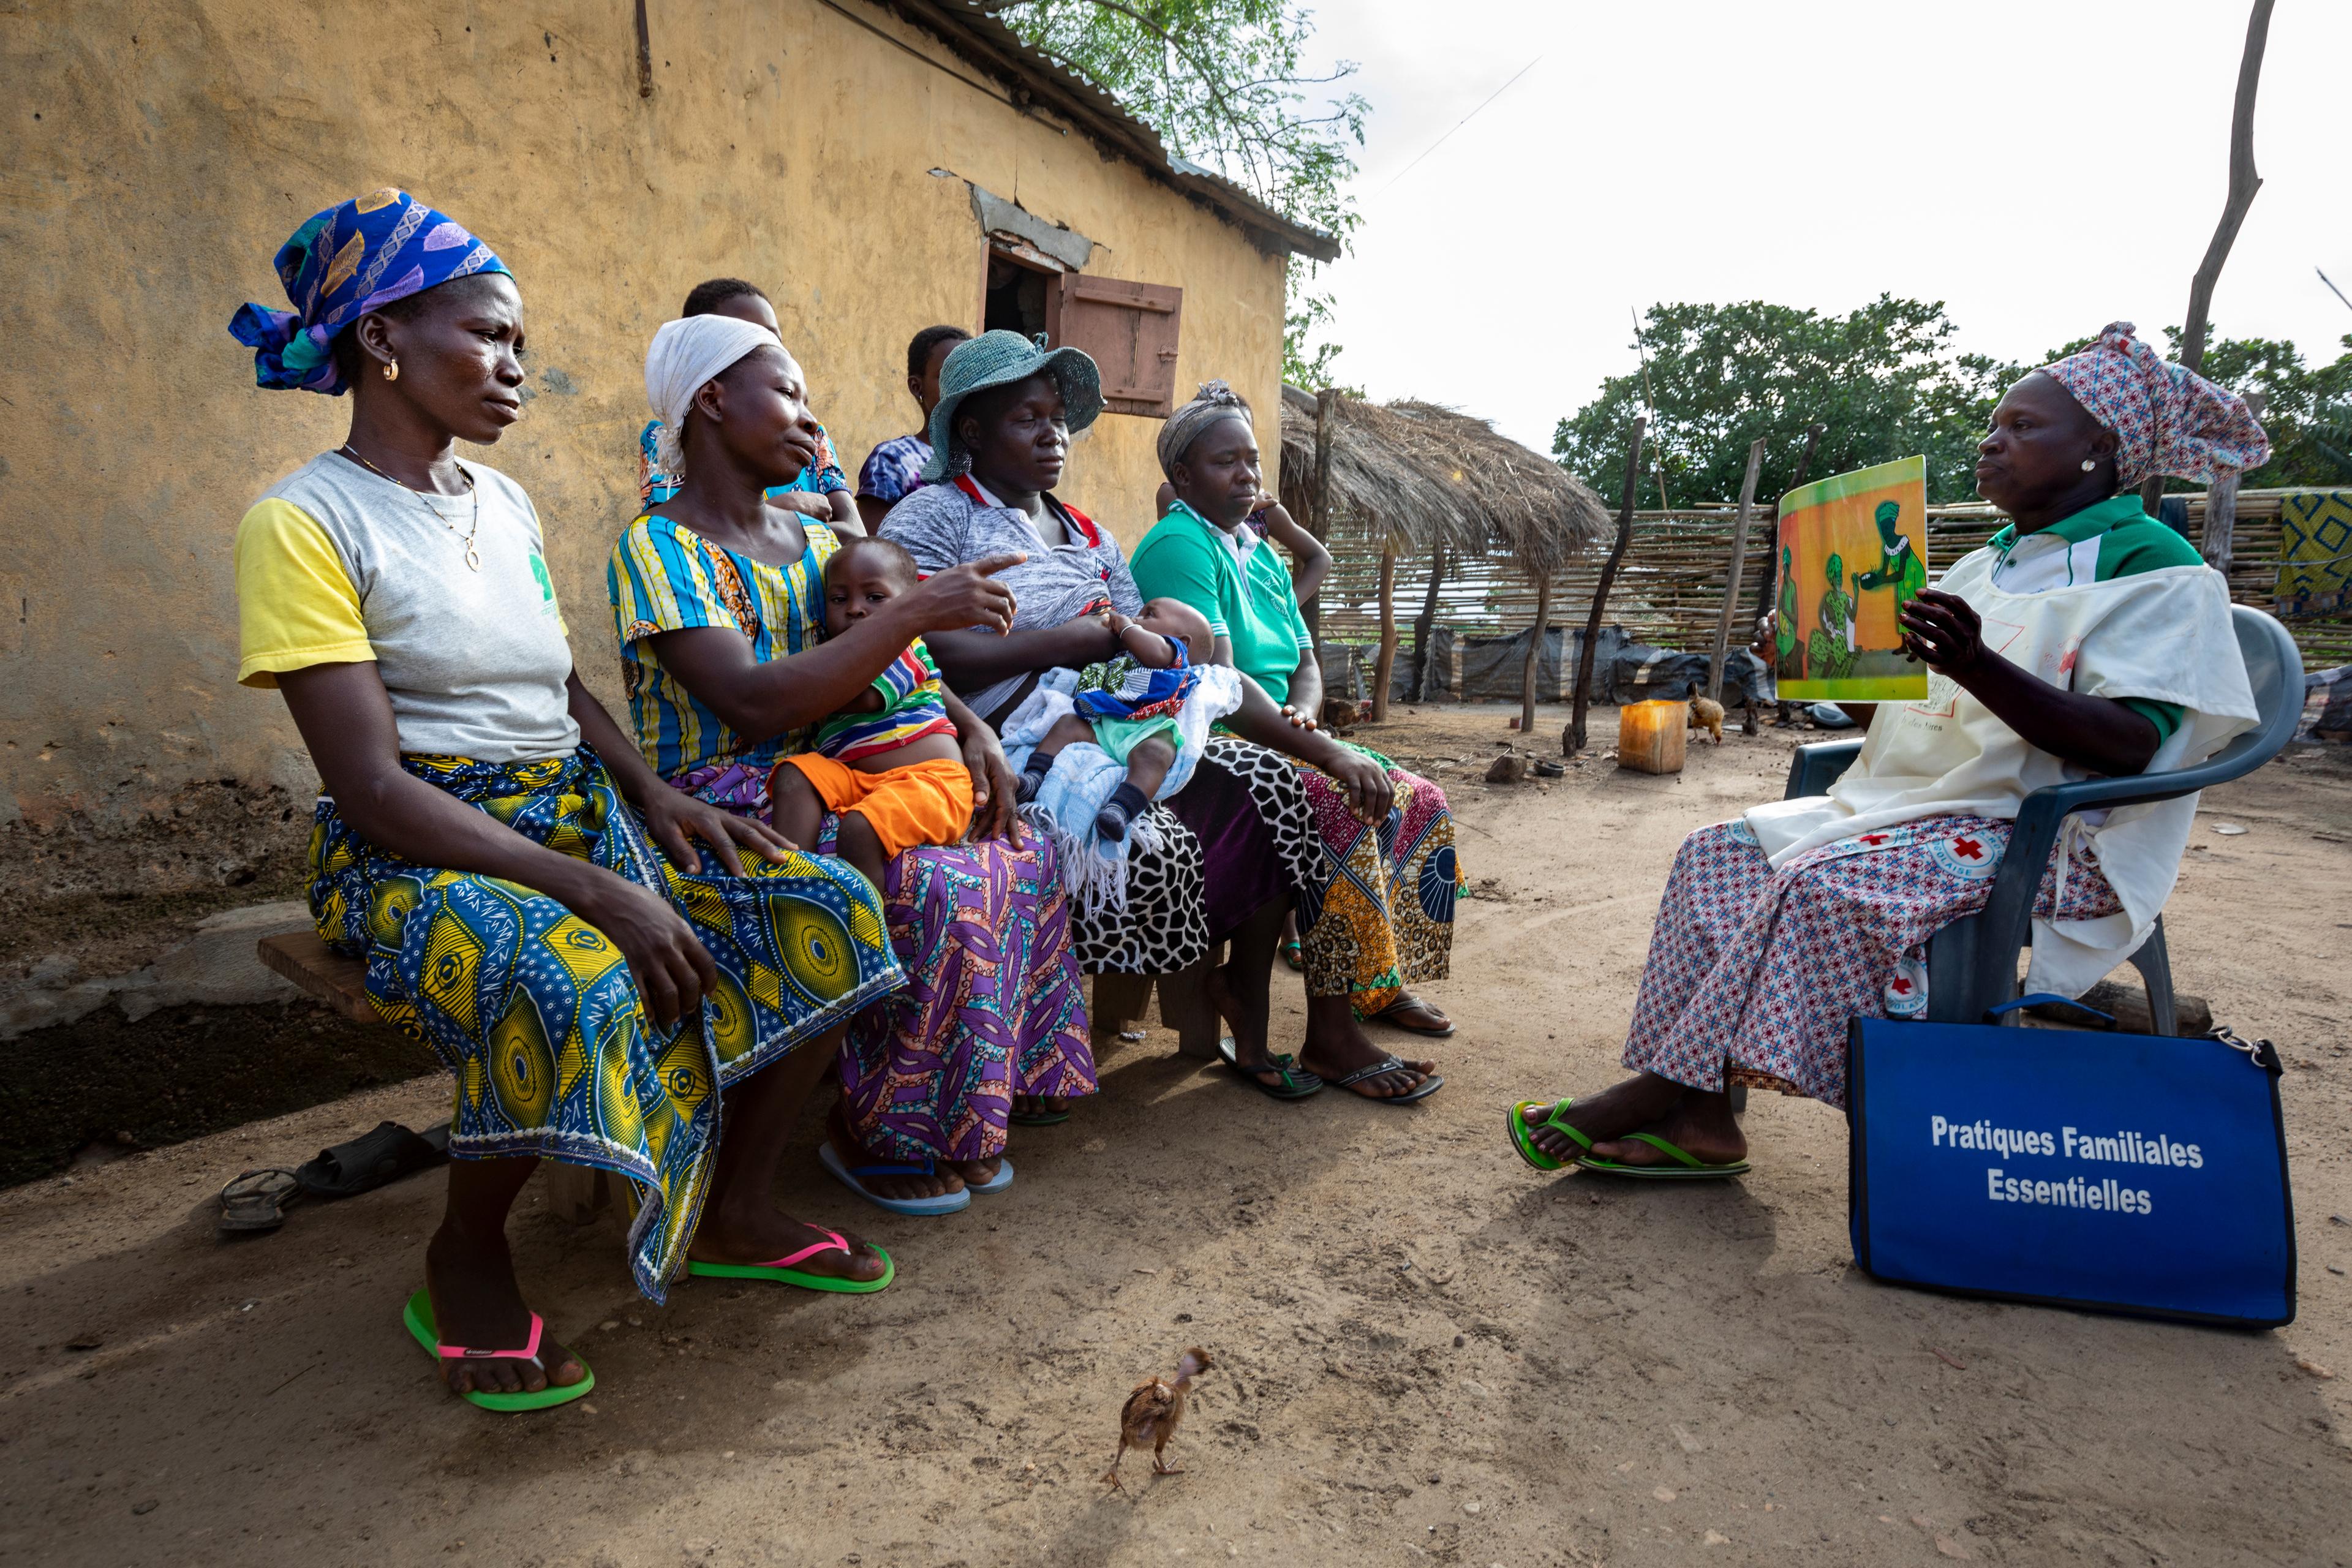 Quatre Africaines sont assises sur un banc en bois devant une maison en torchis, deux d’entre elles ont un bébé dans les bras. Une femme portant une blouse de la Croix-Rouge est assise en face d’elles. Elle leur montre un dessin représentant une scène de vie villageoise avec des femmes, dont des mères.